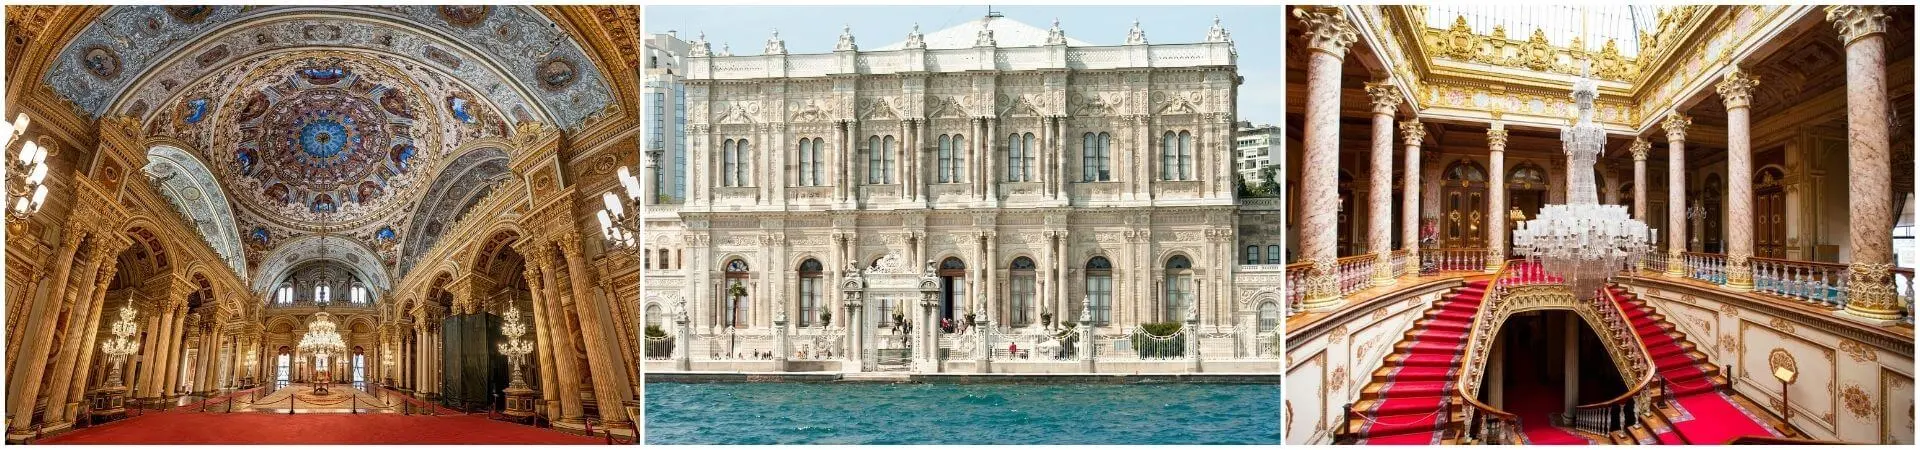 Visita guiada ao Palácio Dolmabahce